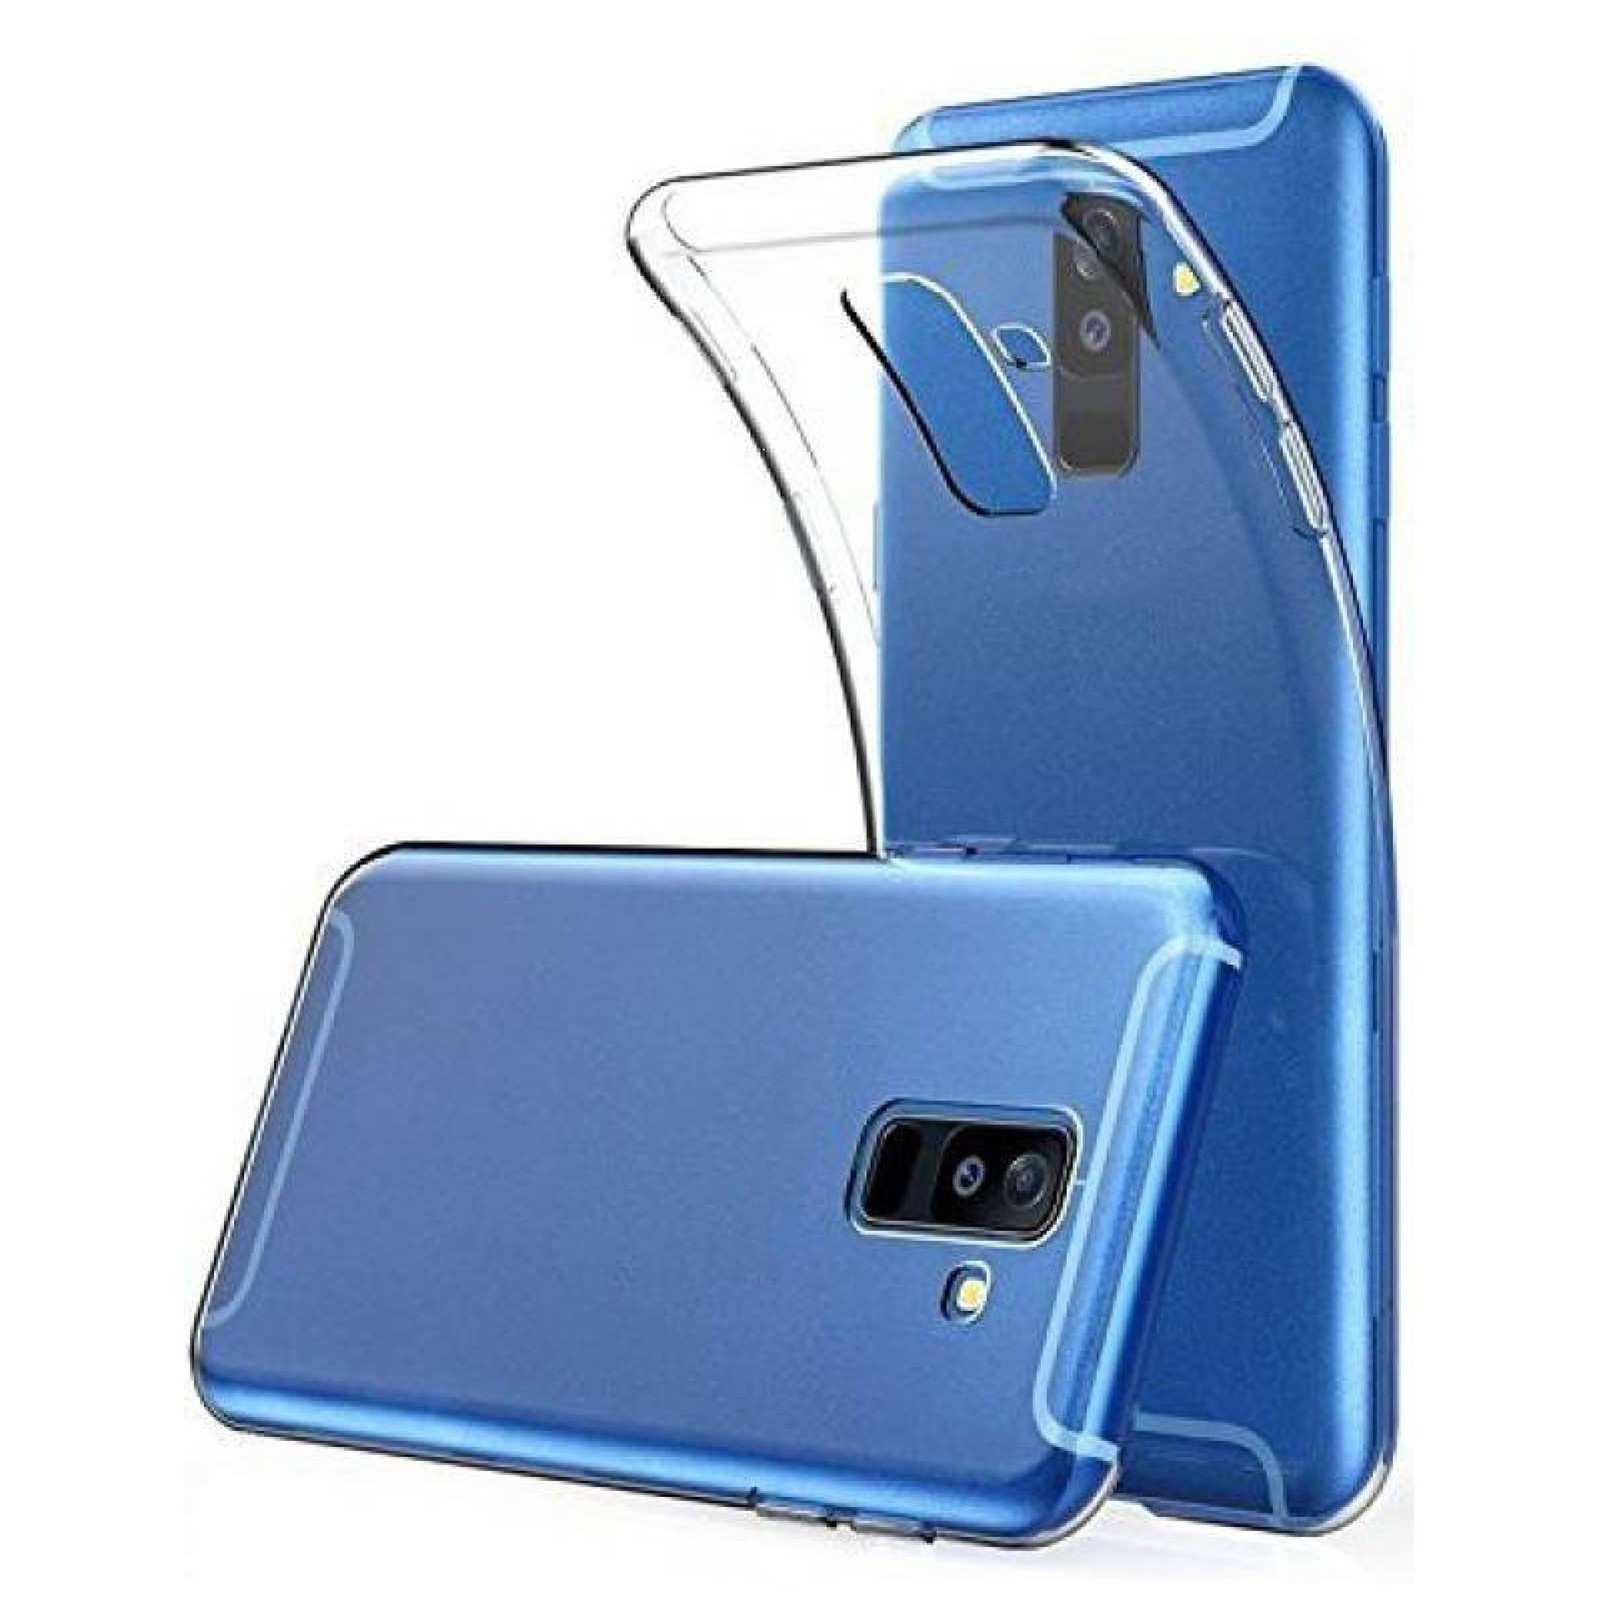 Ốp lưng cho Samsung Galaxy A6 Plus dẻo, trong suốt